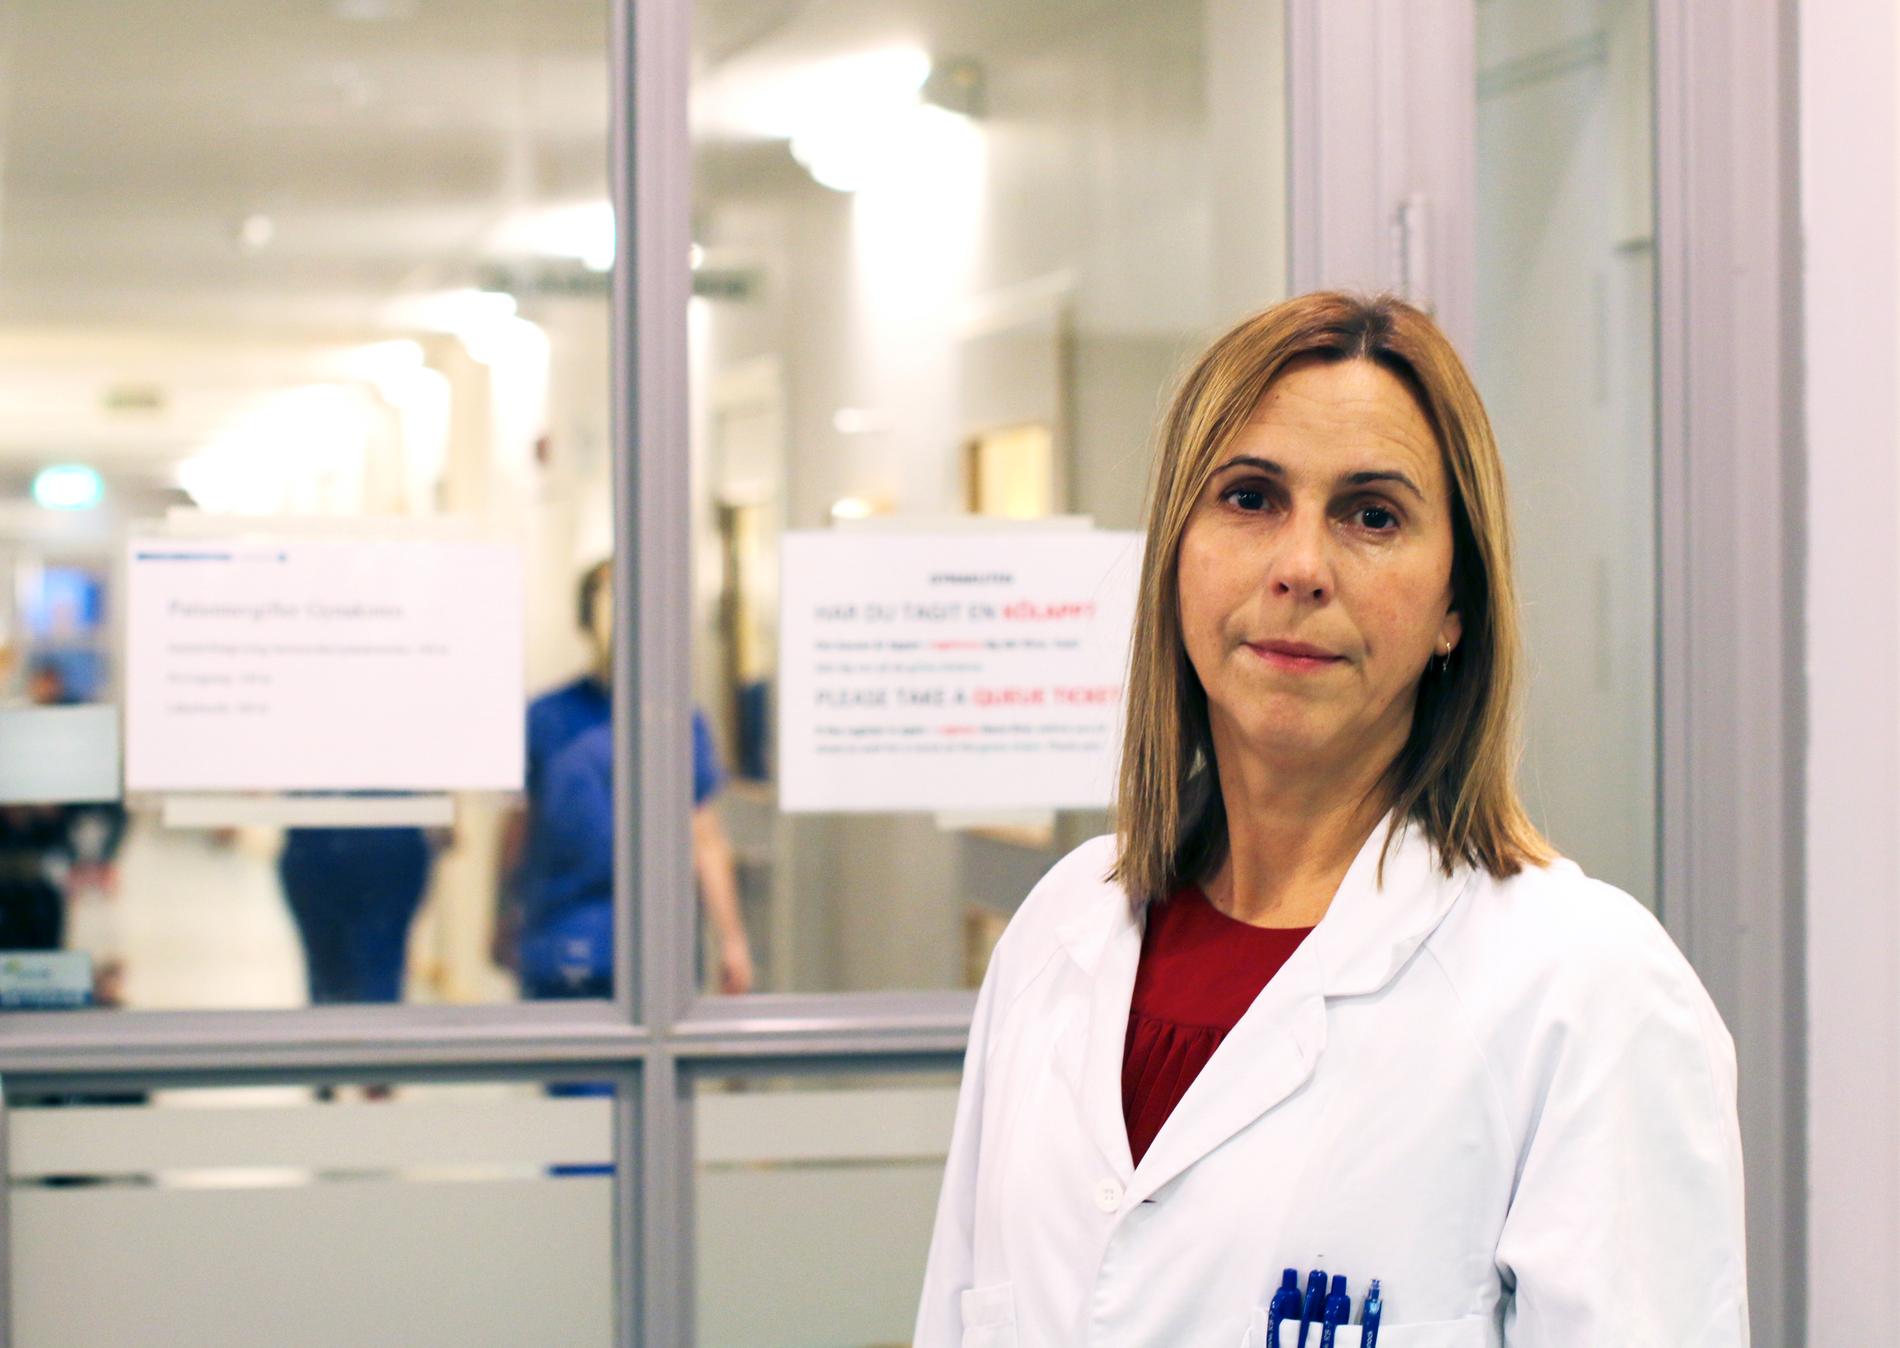 ”Vi tvingar ingen att åka hem”, säger Corinne Pedroletti, verksamhetschef obstetrik vid Sahlgrenska universitetssjukhuset som sedan årsskiftet tillämpar tidig hemgång för omföderskor som förstahandsalternativ.